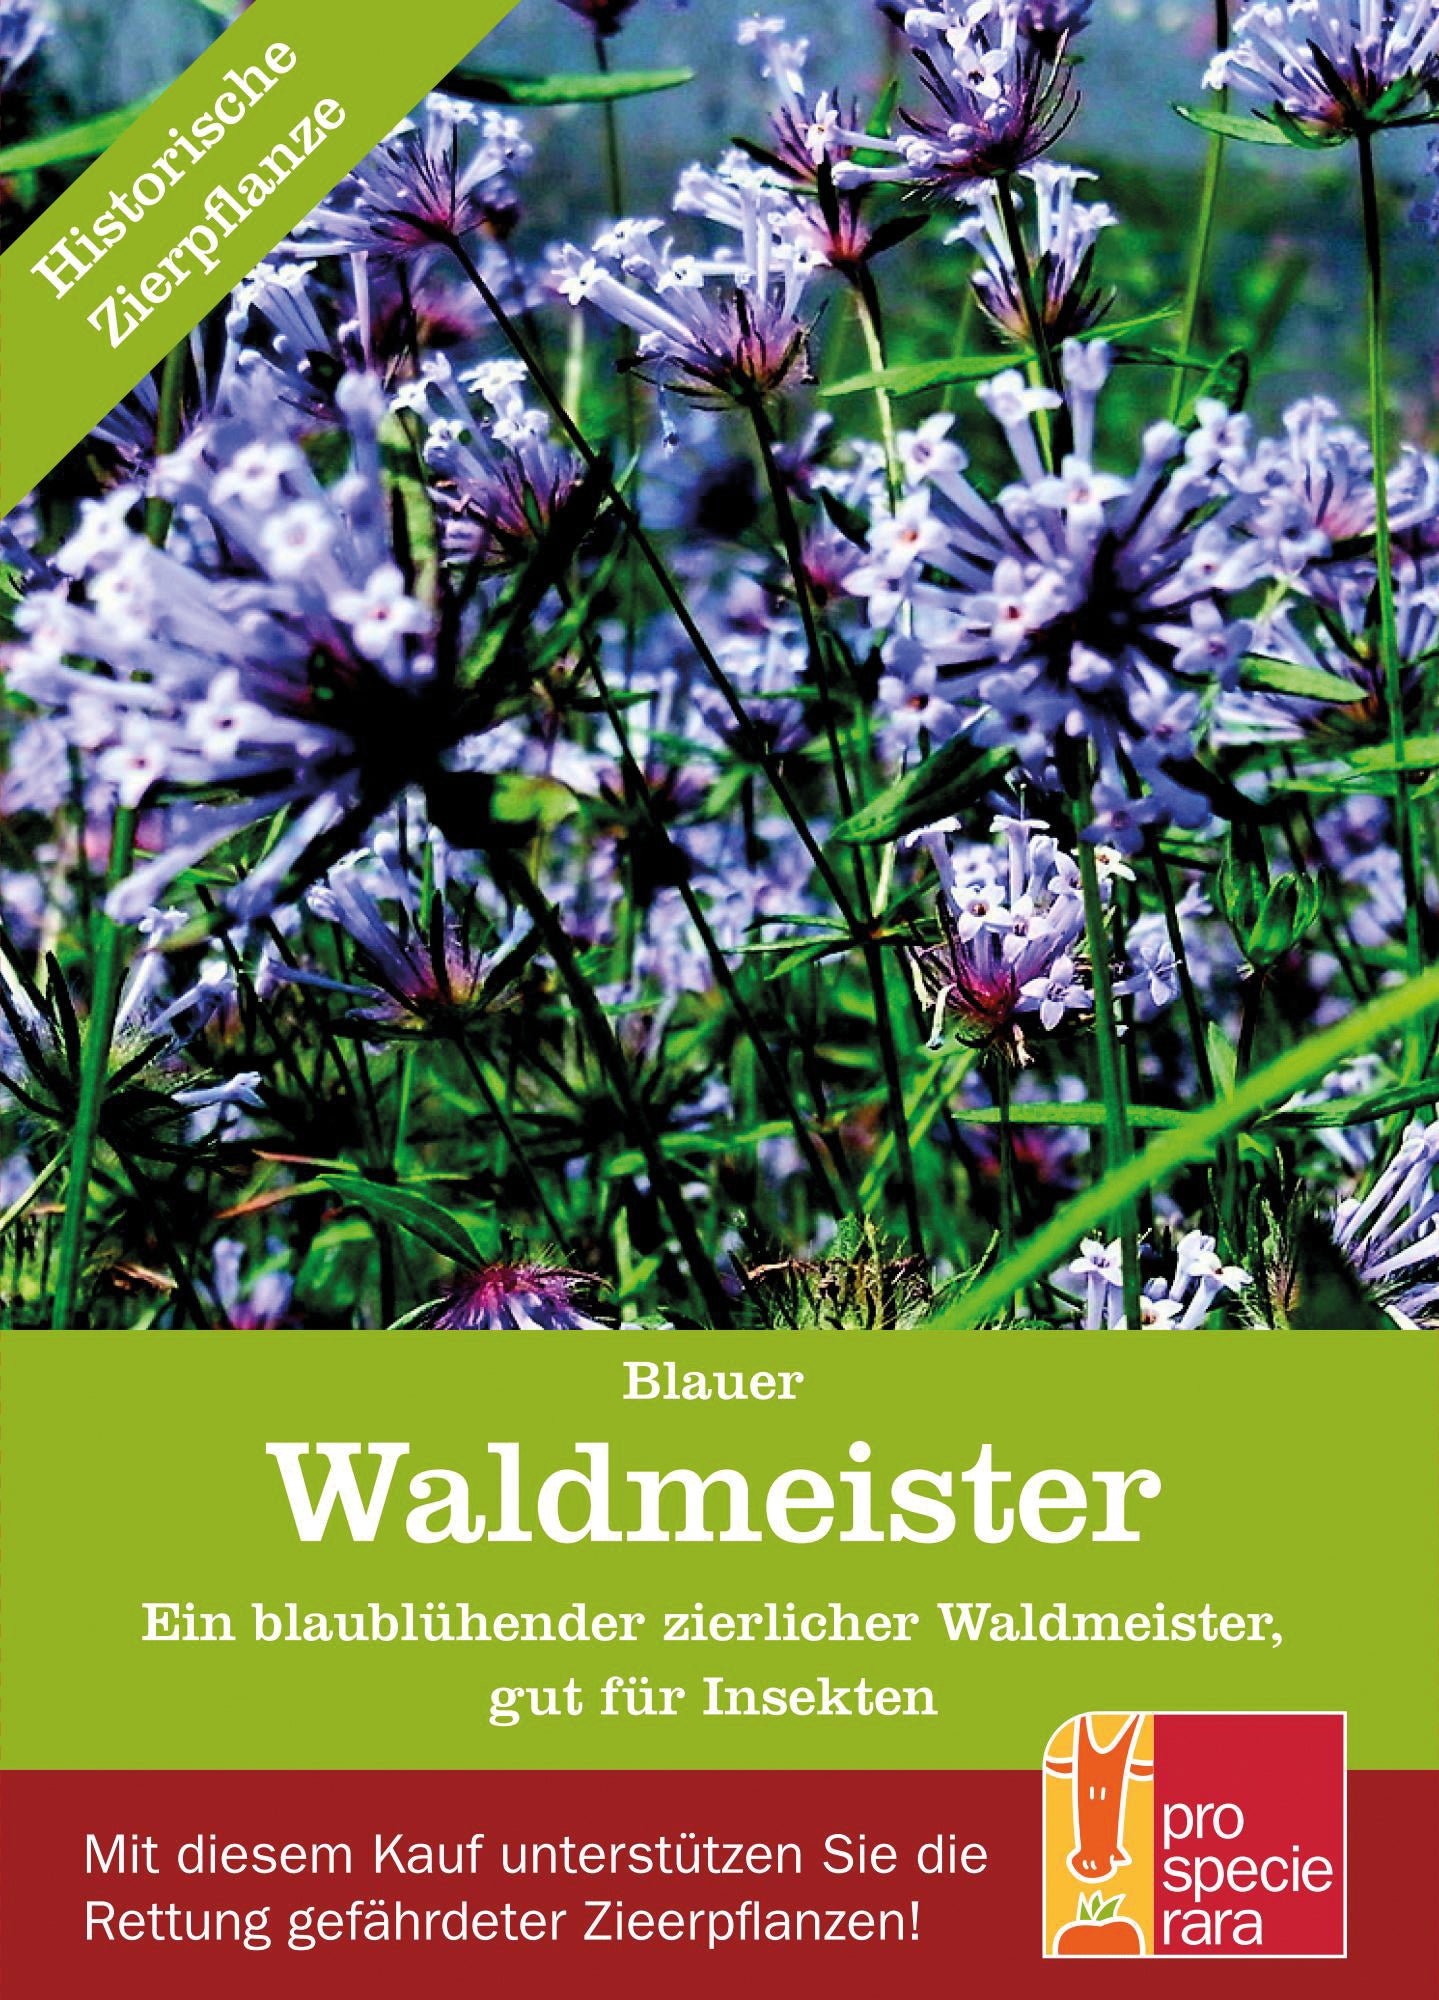 Blauer Waldmeister | BIO Waldmeistersamen von ProSpecieRara